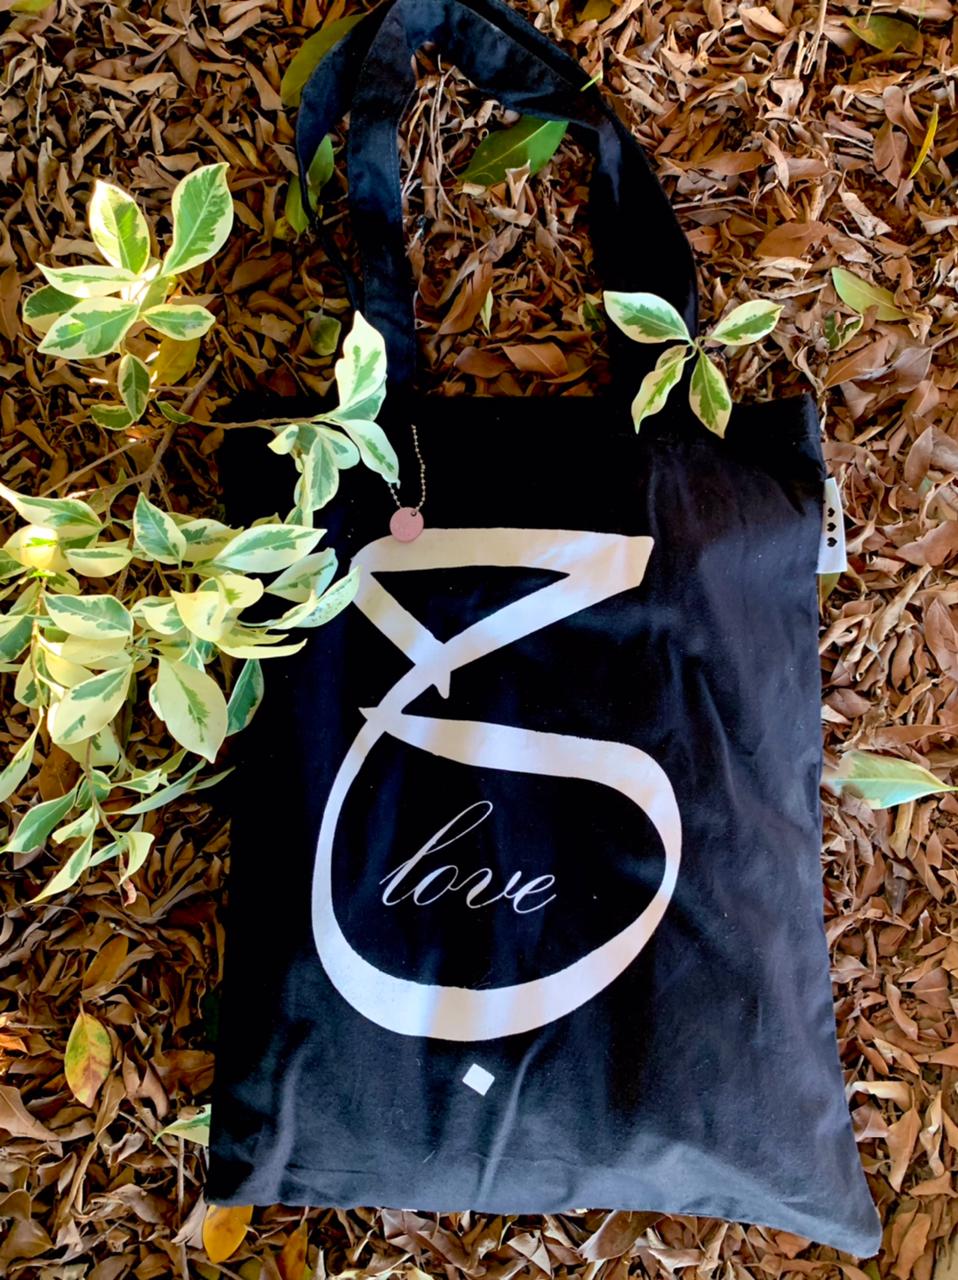 Tote Bag Love